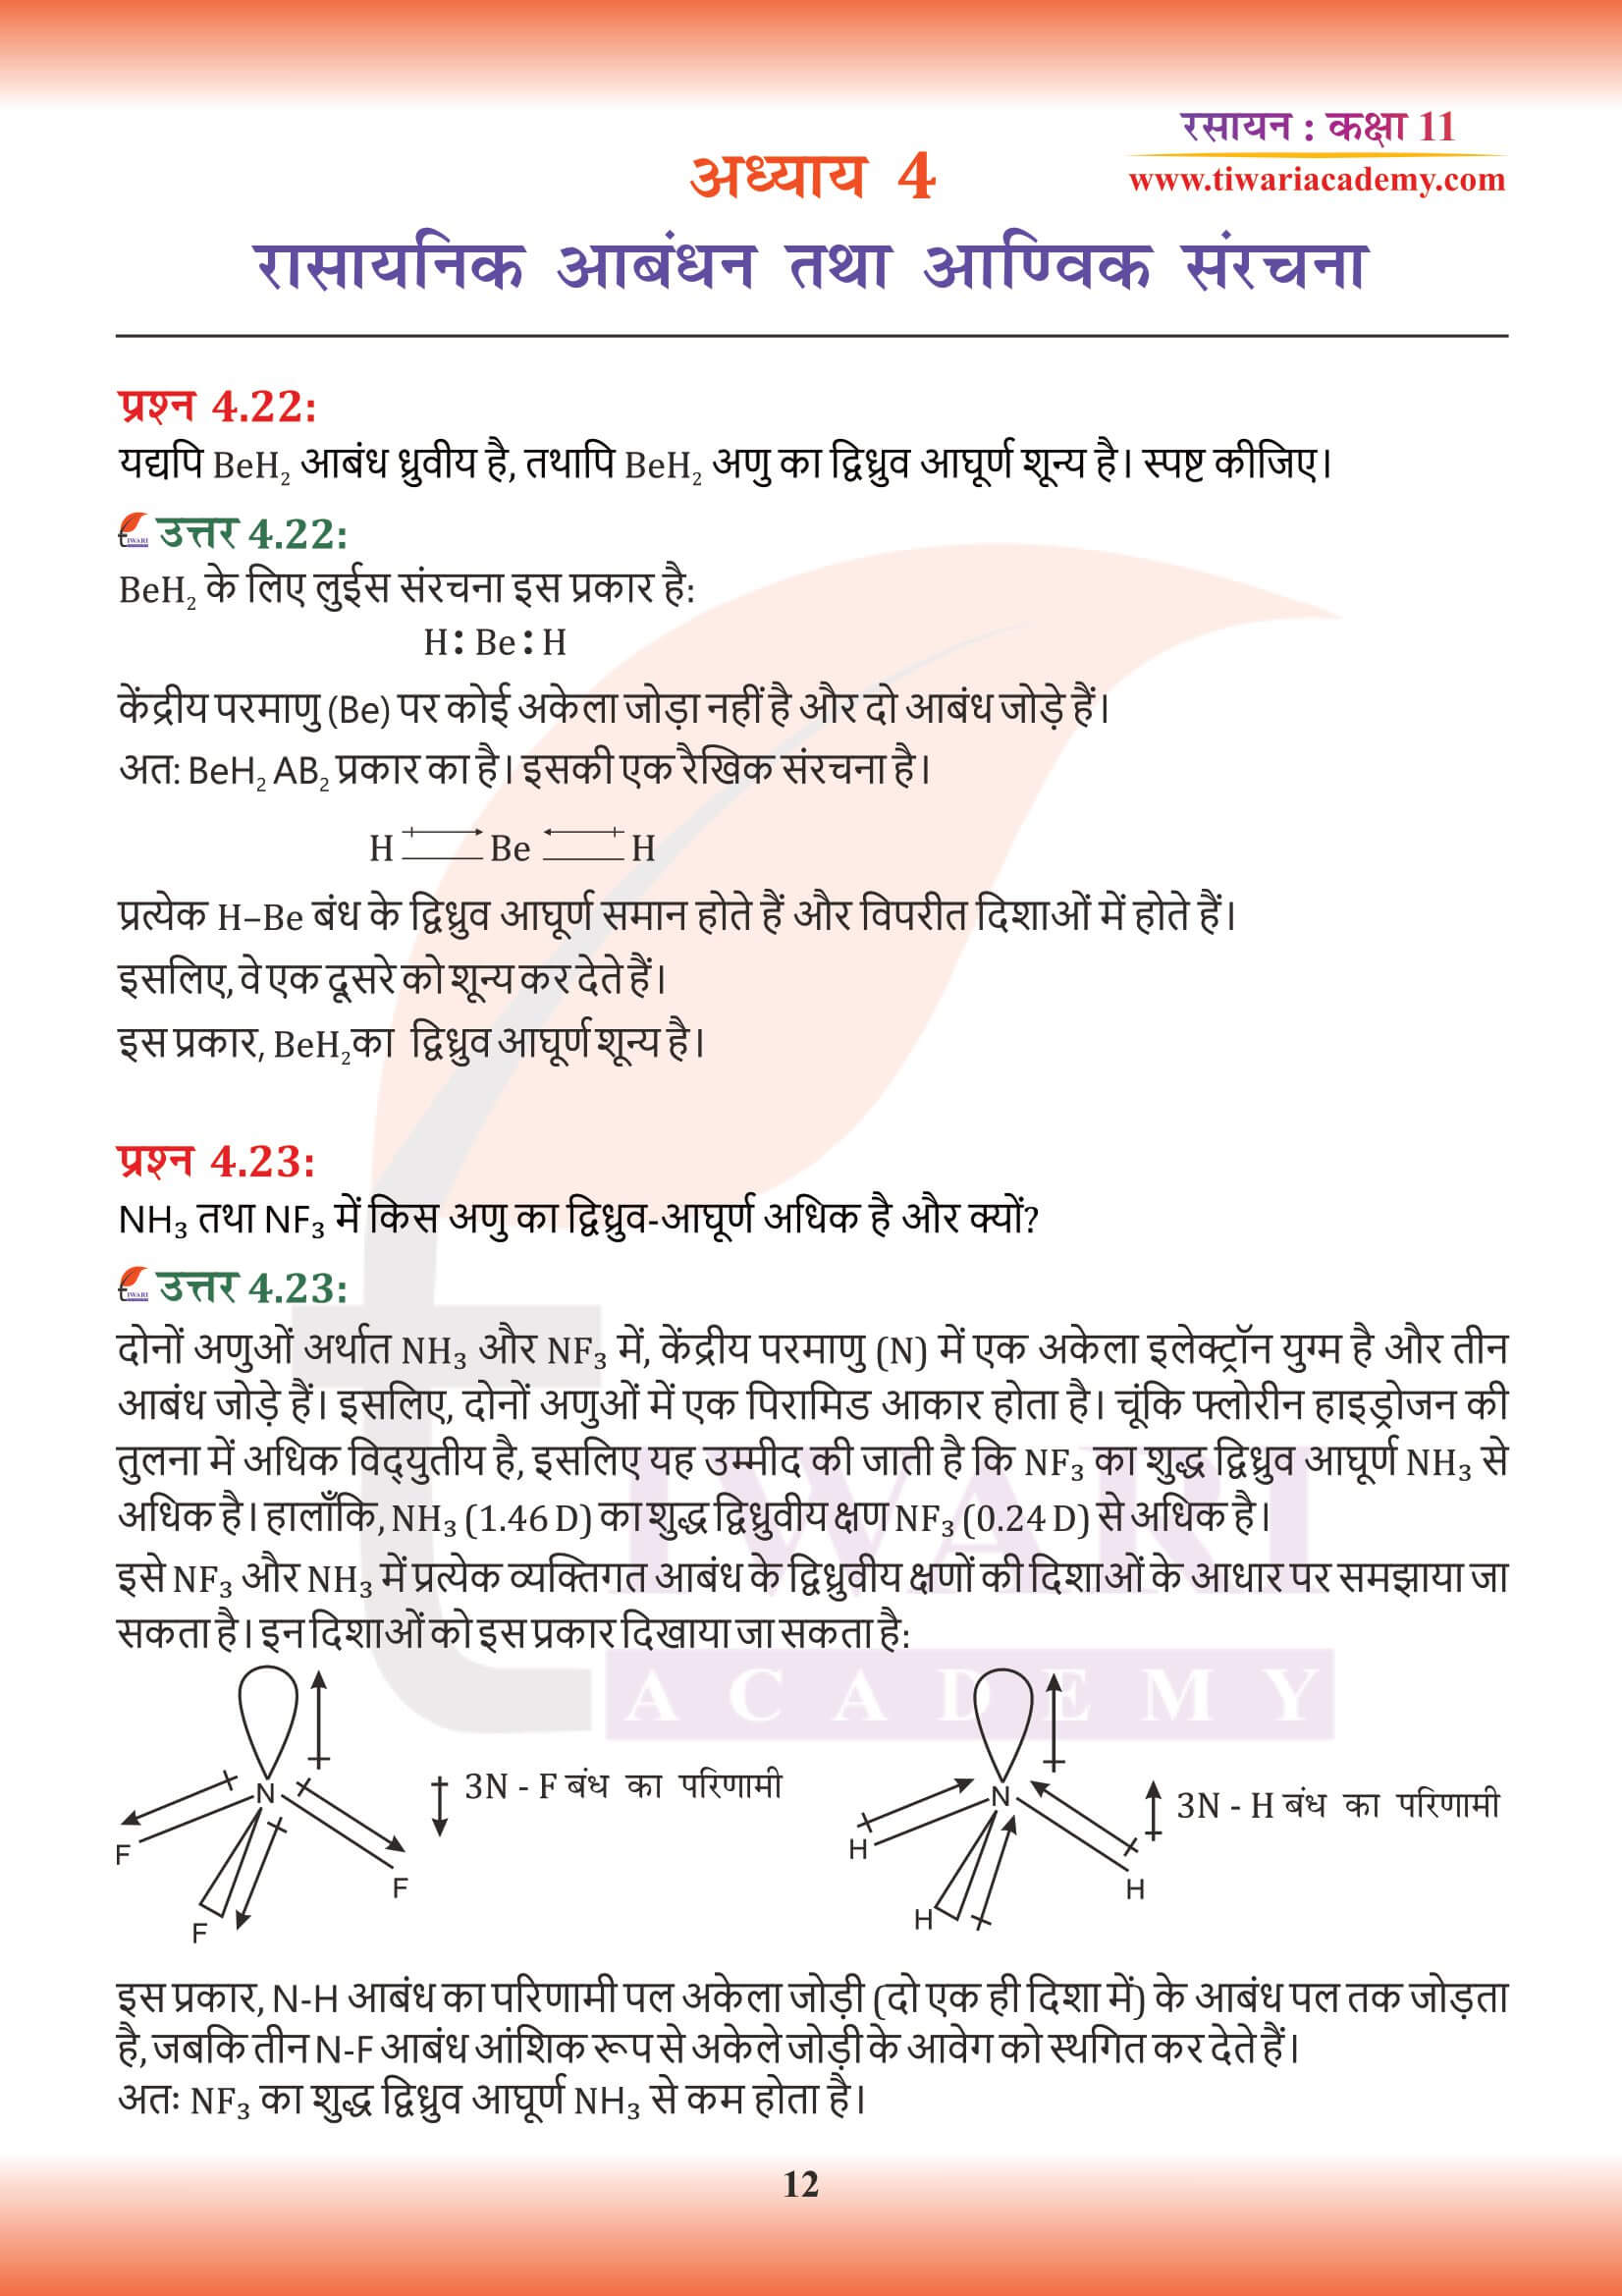 कक्षा 11 रसायन अध्याय 4 हिंदी मीडियम प्रश्न उत्तर